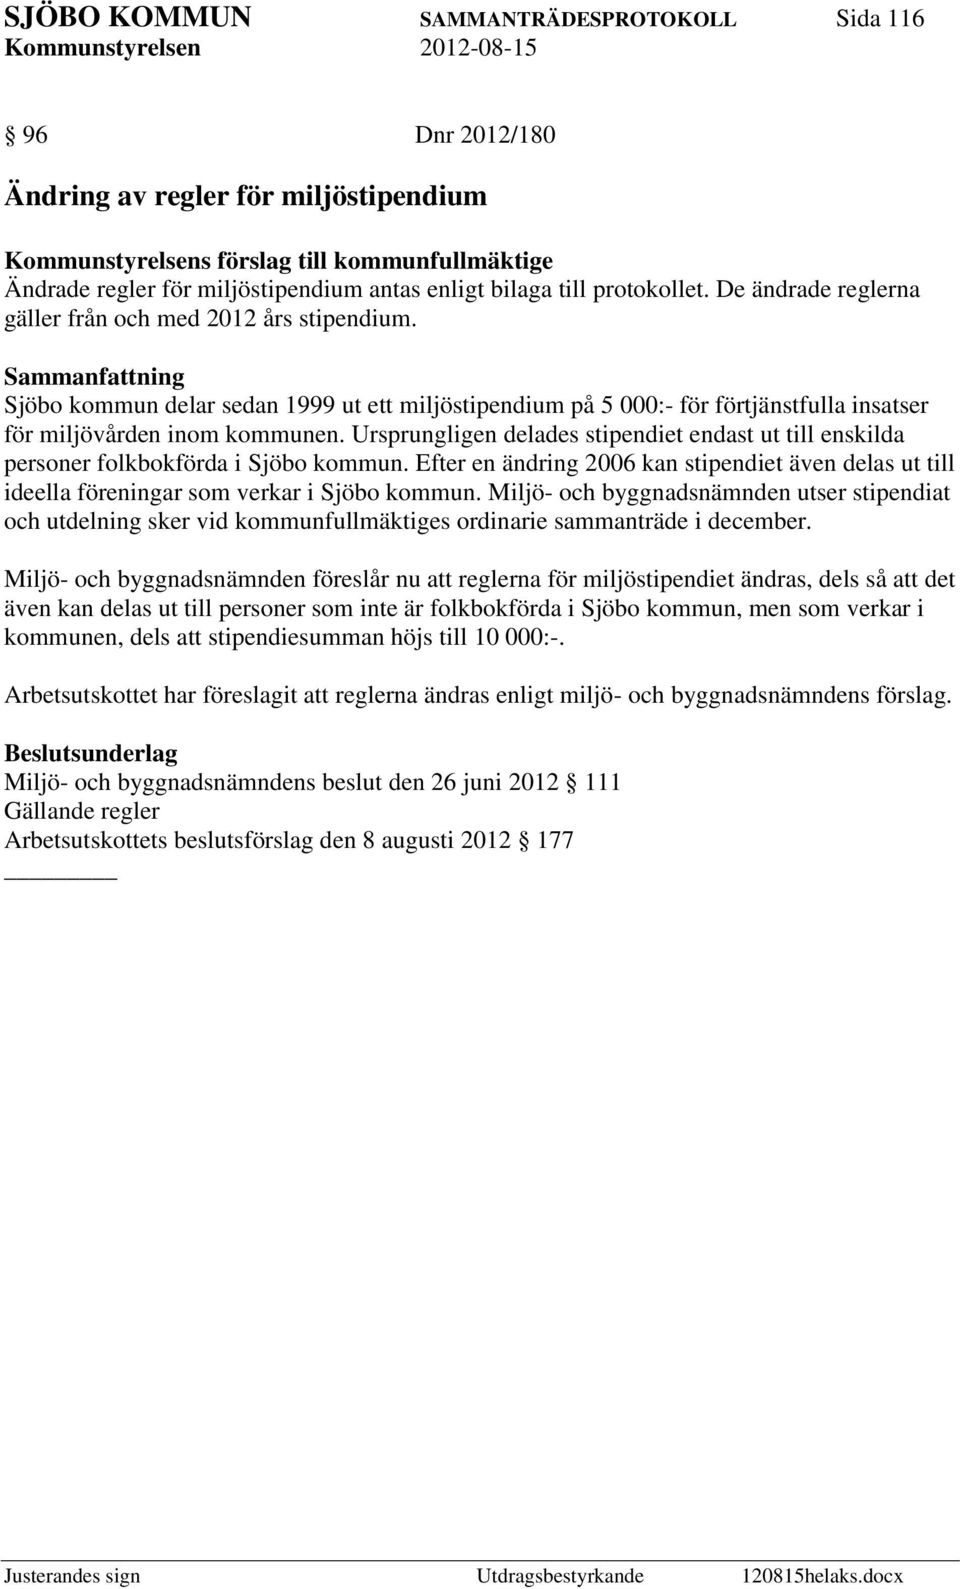 Ursprungligen delades stipendiet endast ut till enskilda personer folkbokförda i Sjöbo kommun. Efter en ändring 2006 kan stipendiet även delas ut till ideella föreningar som verkar i Sjöbo kommun.